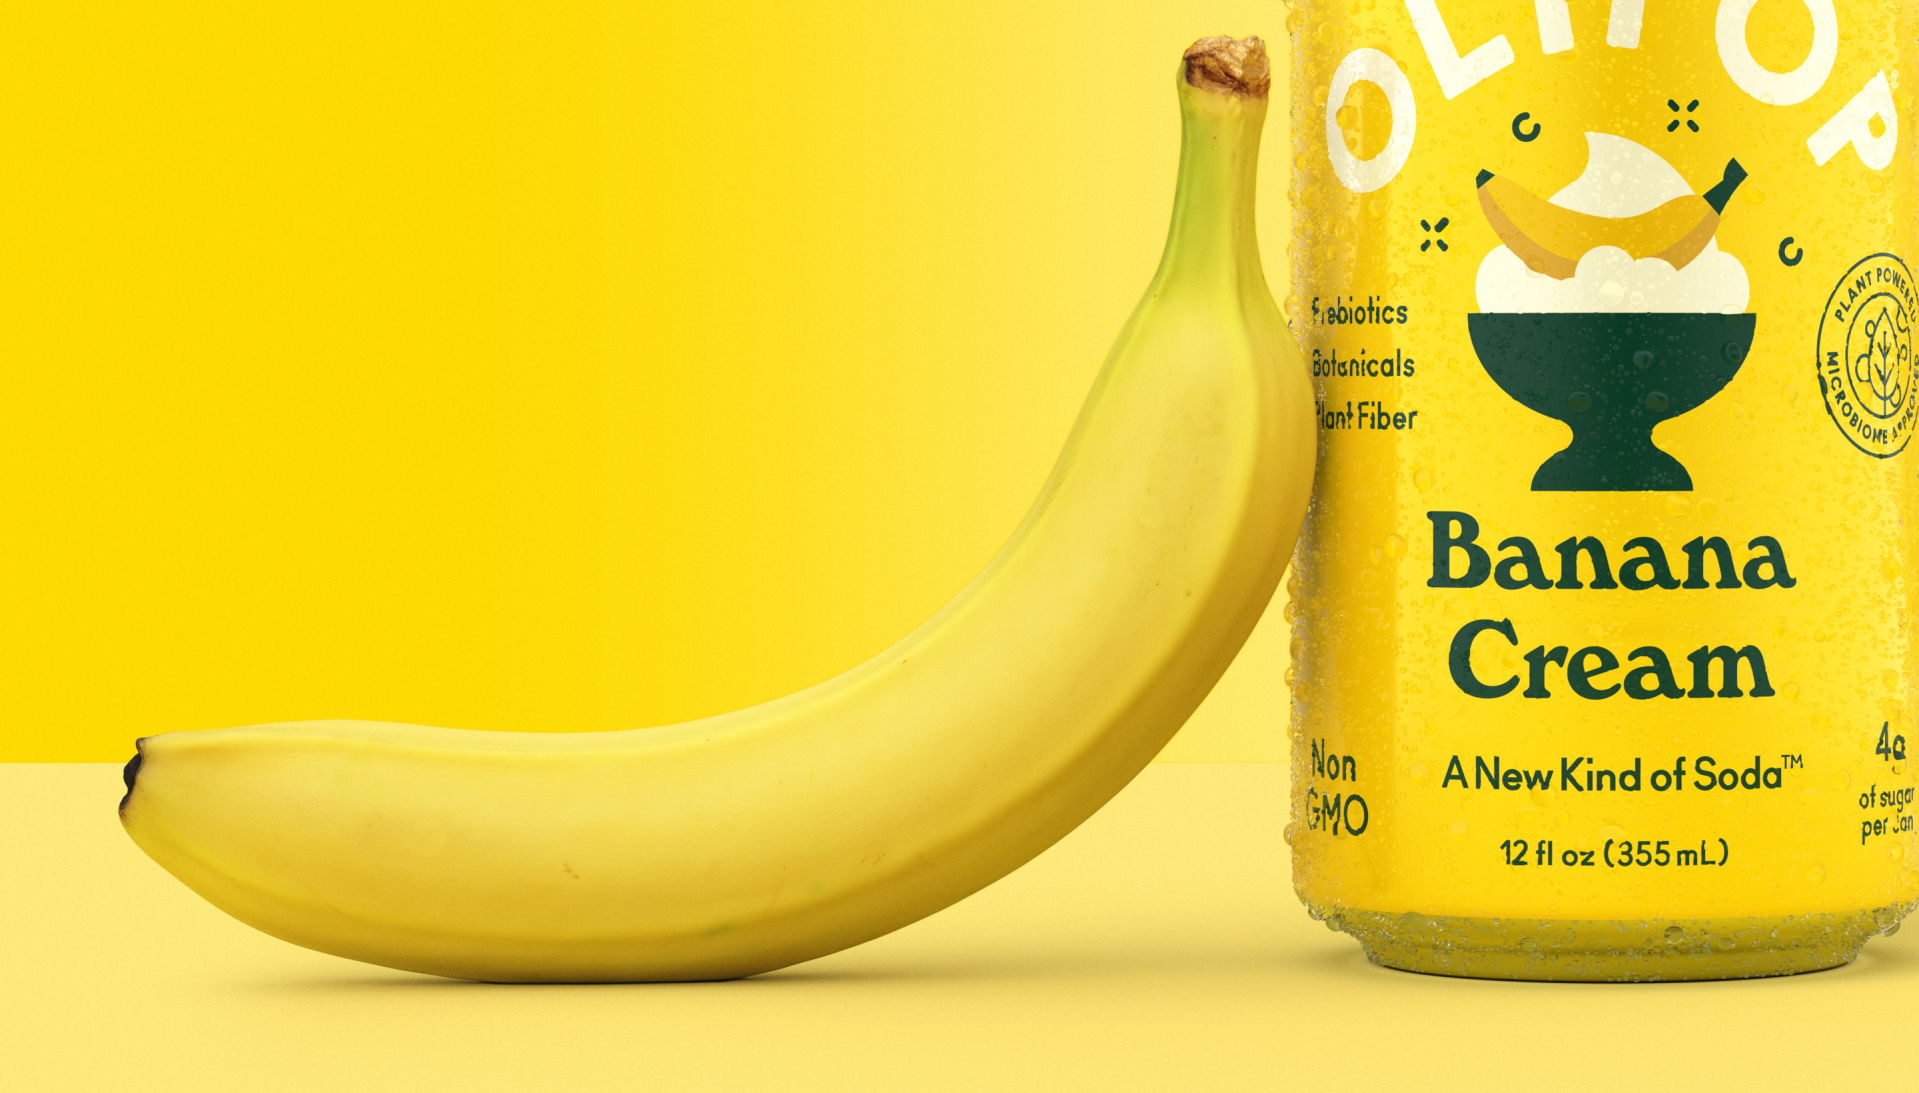 OLIPOP Banana Cream Drinks CGI Food CGI